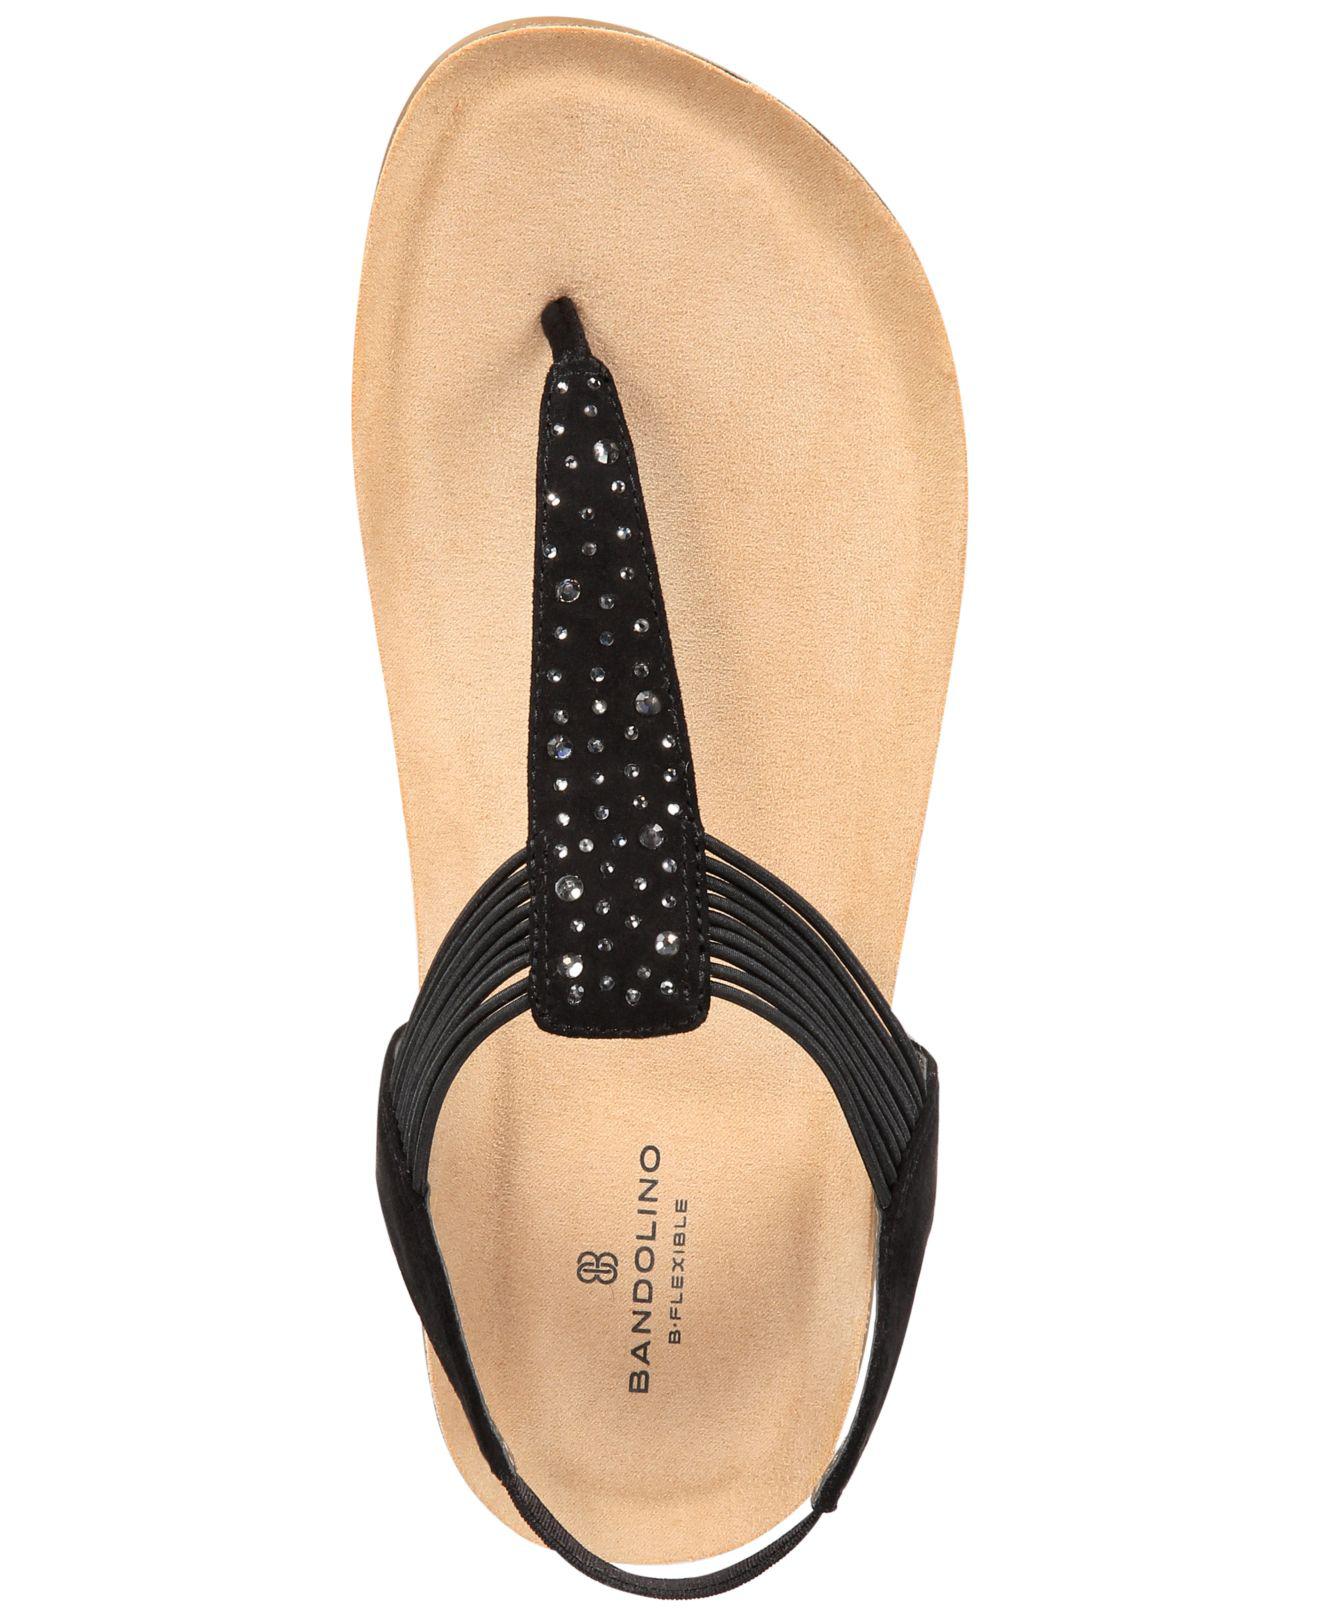 bandolino women's evelina slide sandal